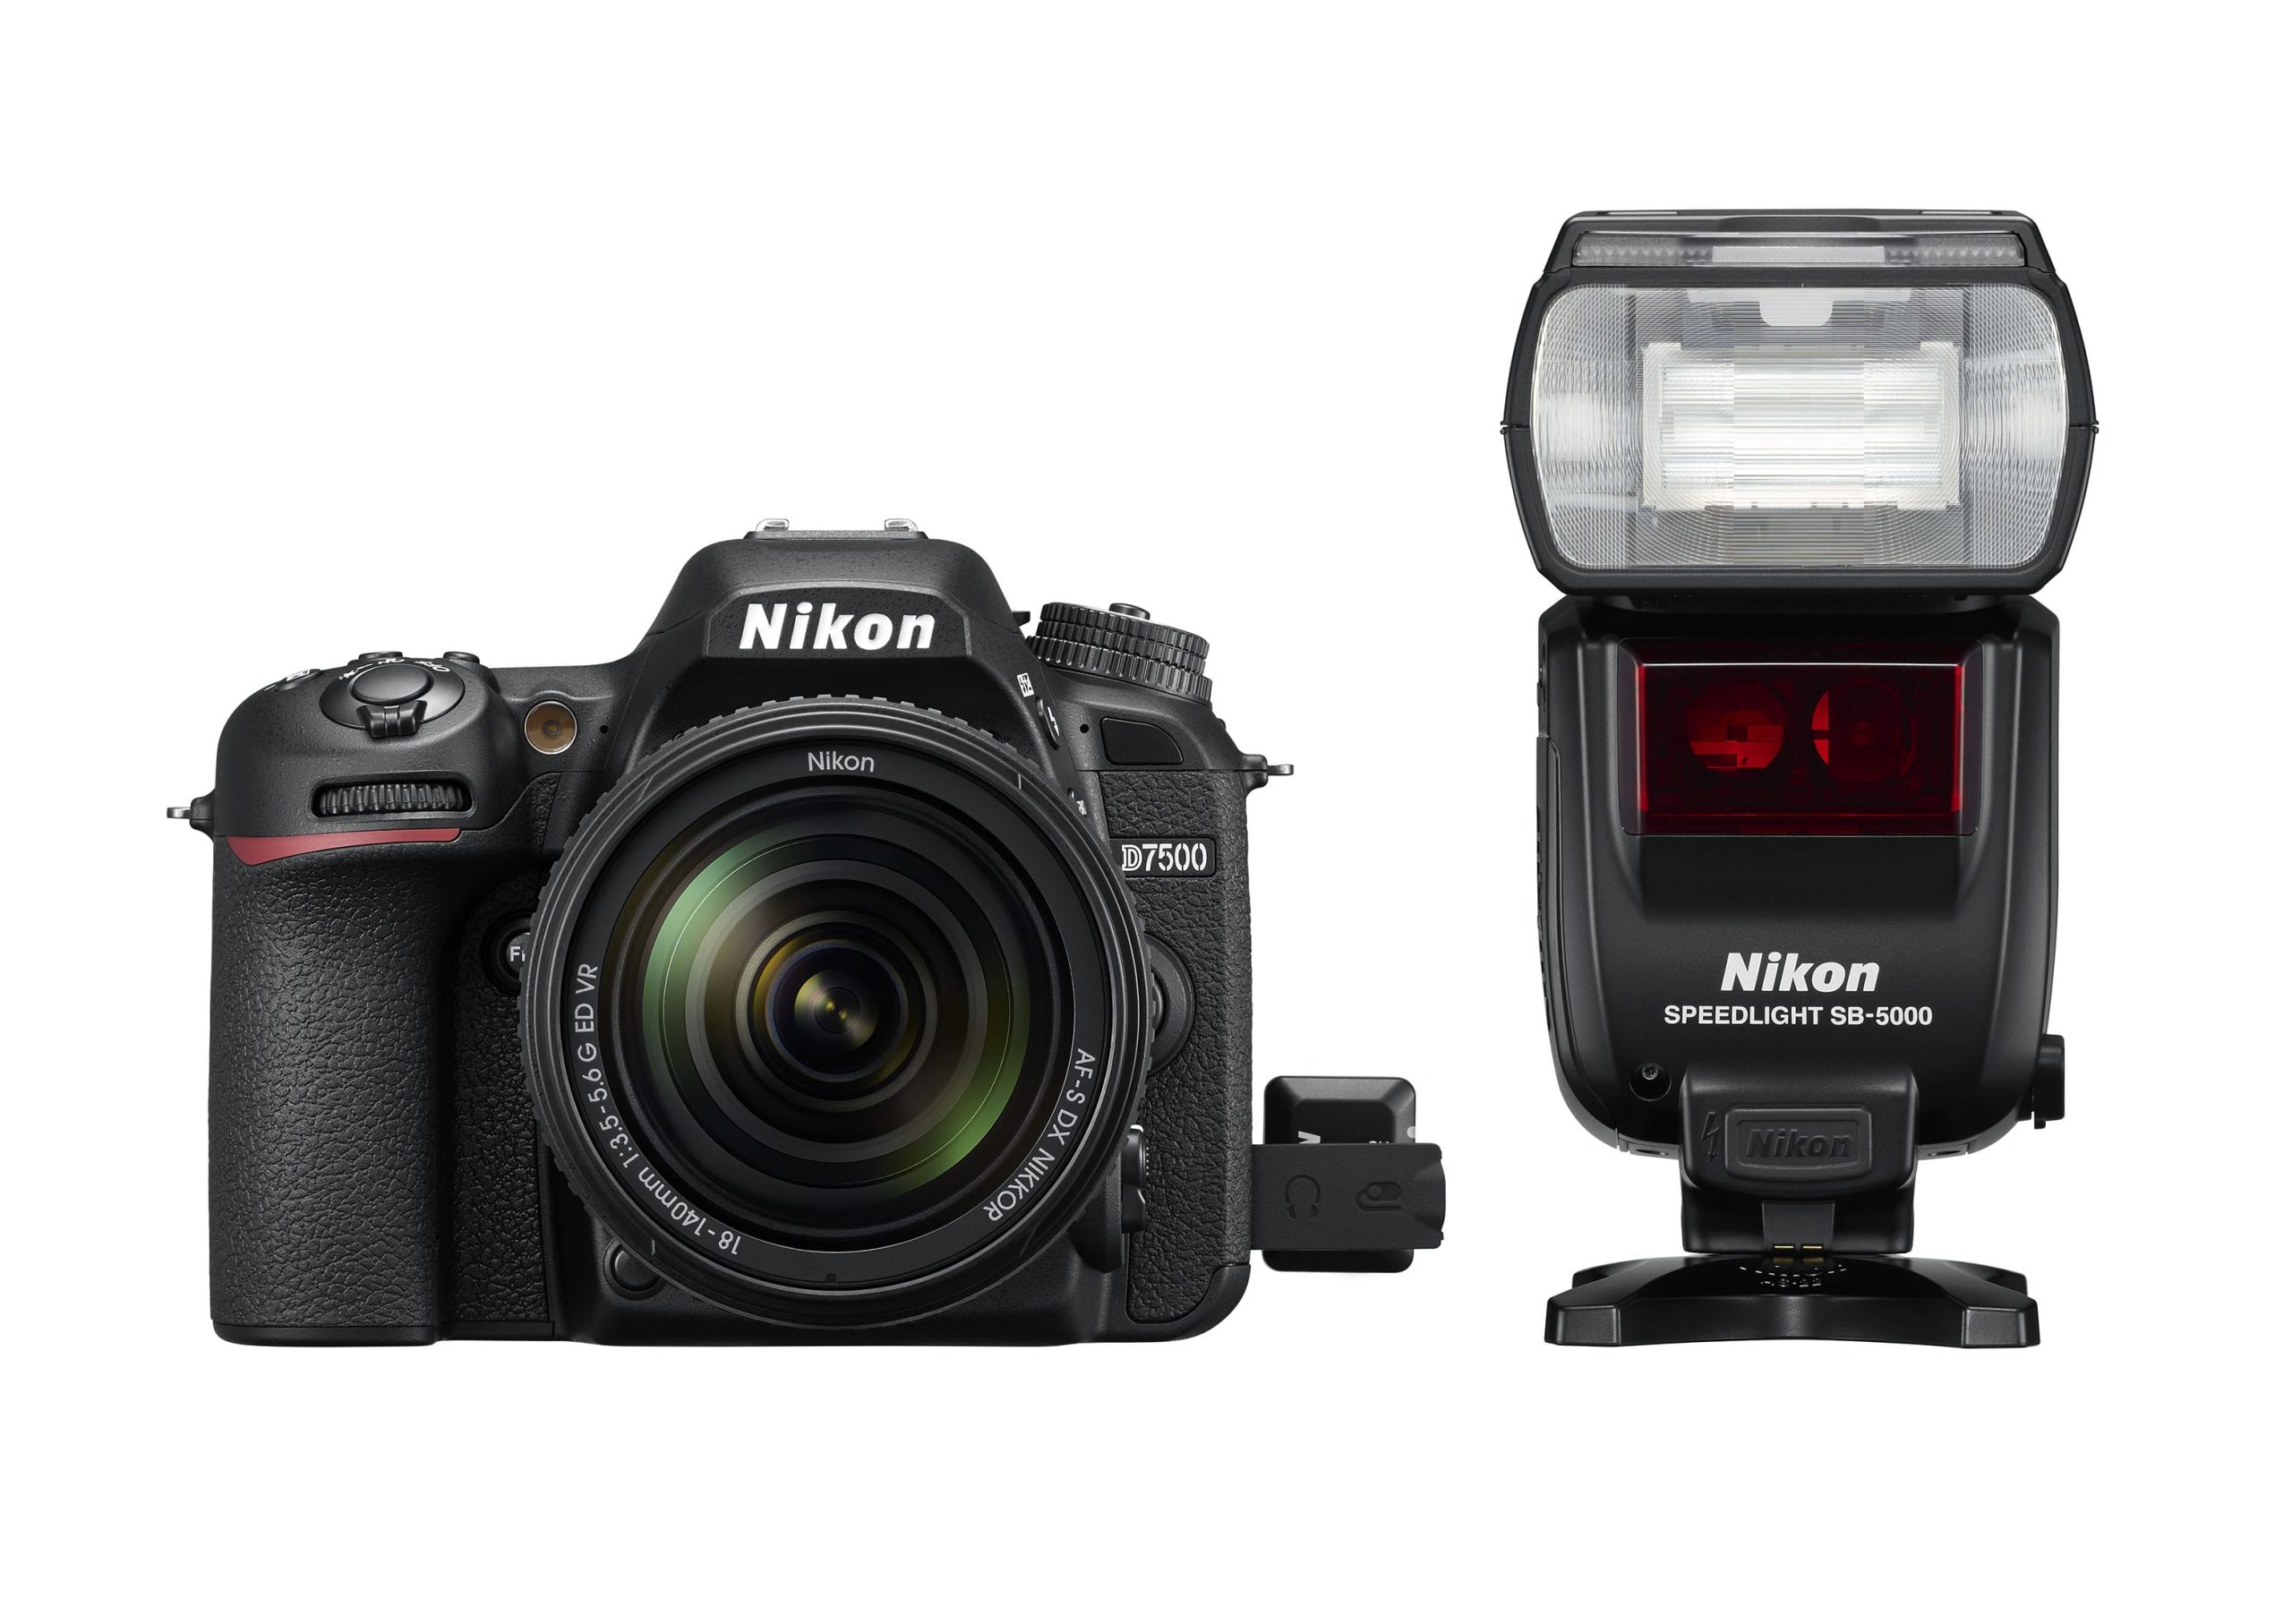 Nikon D7500 with external flash.